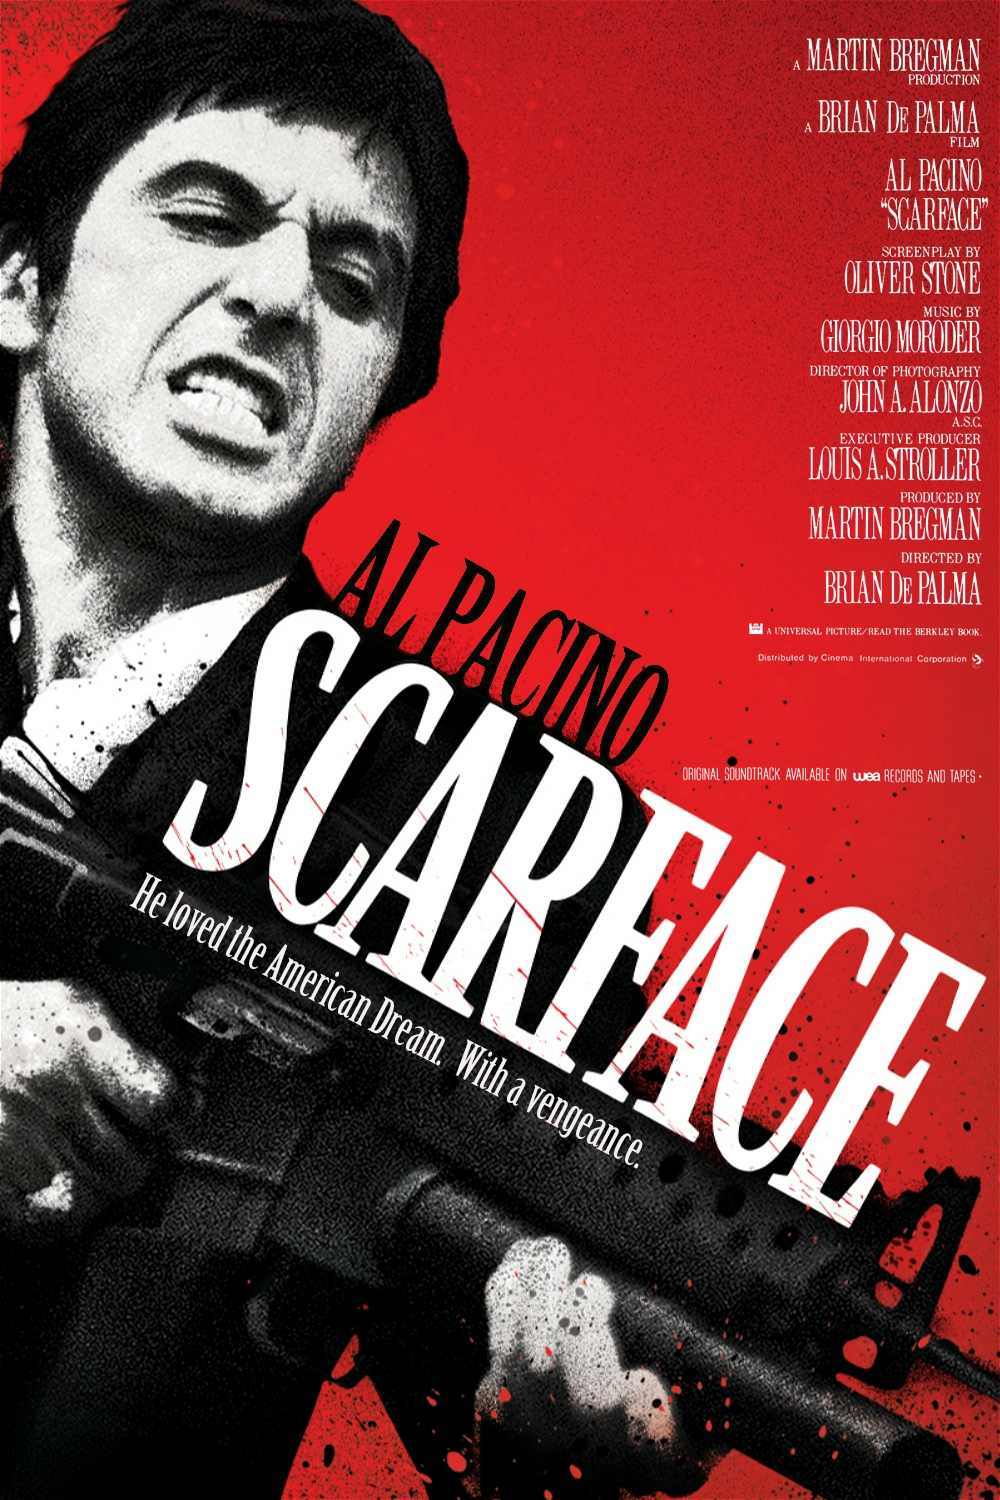 疤面煞星.Scarface.1983.Remastered.1080p.BluRay.Remux.Multi.DTS-HD.7.1@ 31.63GB